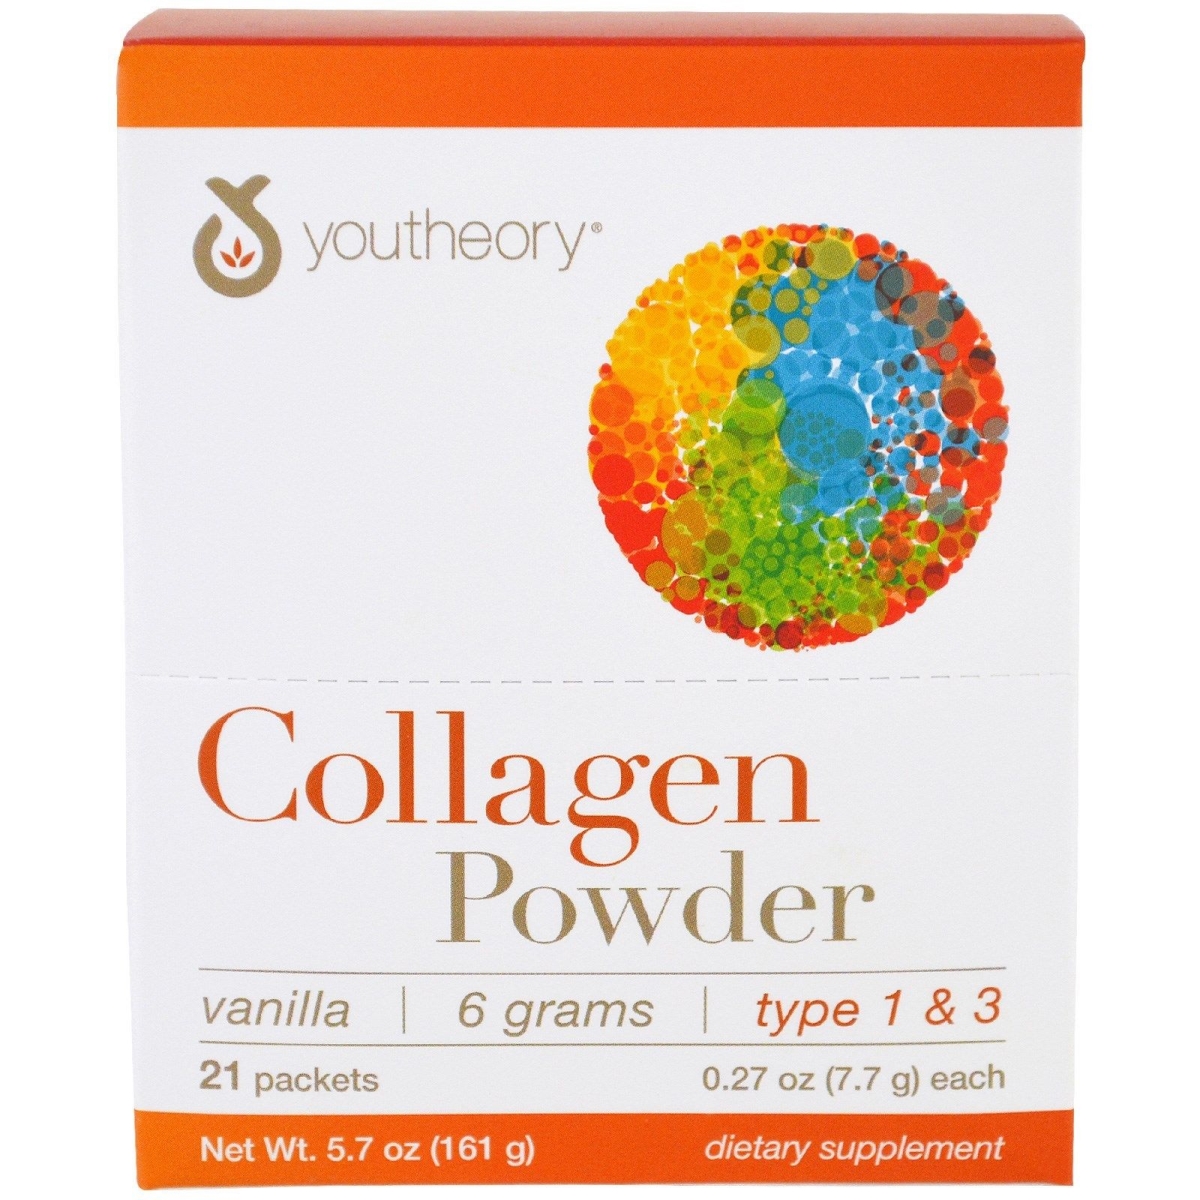 537705 Collagen Powder Packets